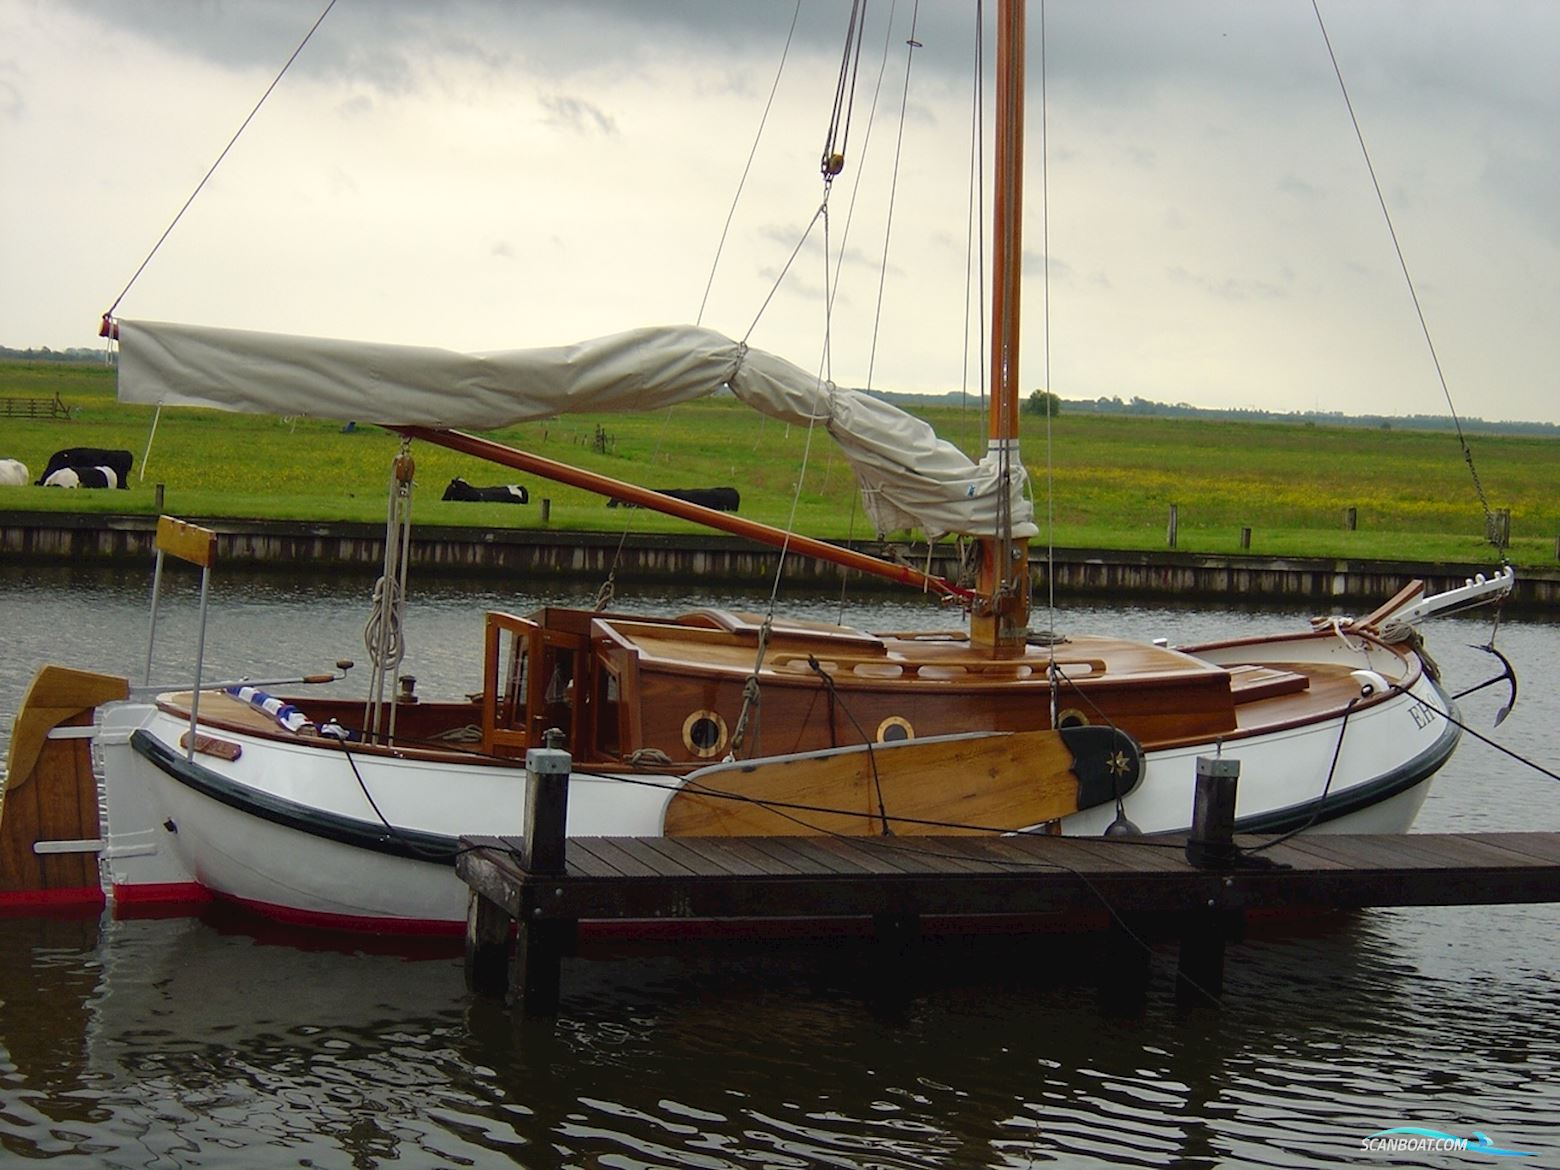 Enkhuizer Bol Sailing boat 1913, with Vetus engine, The Netherlands